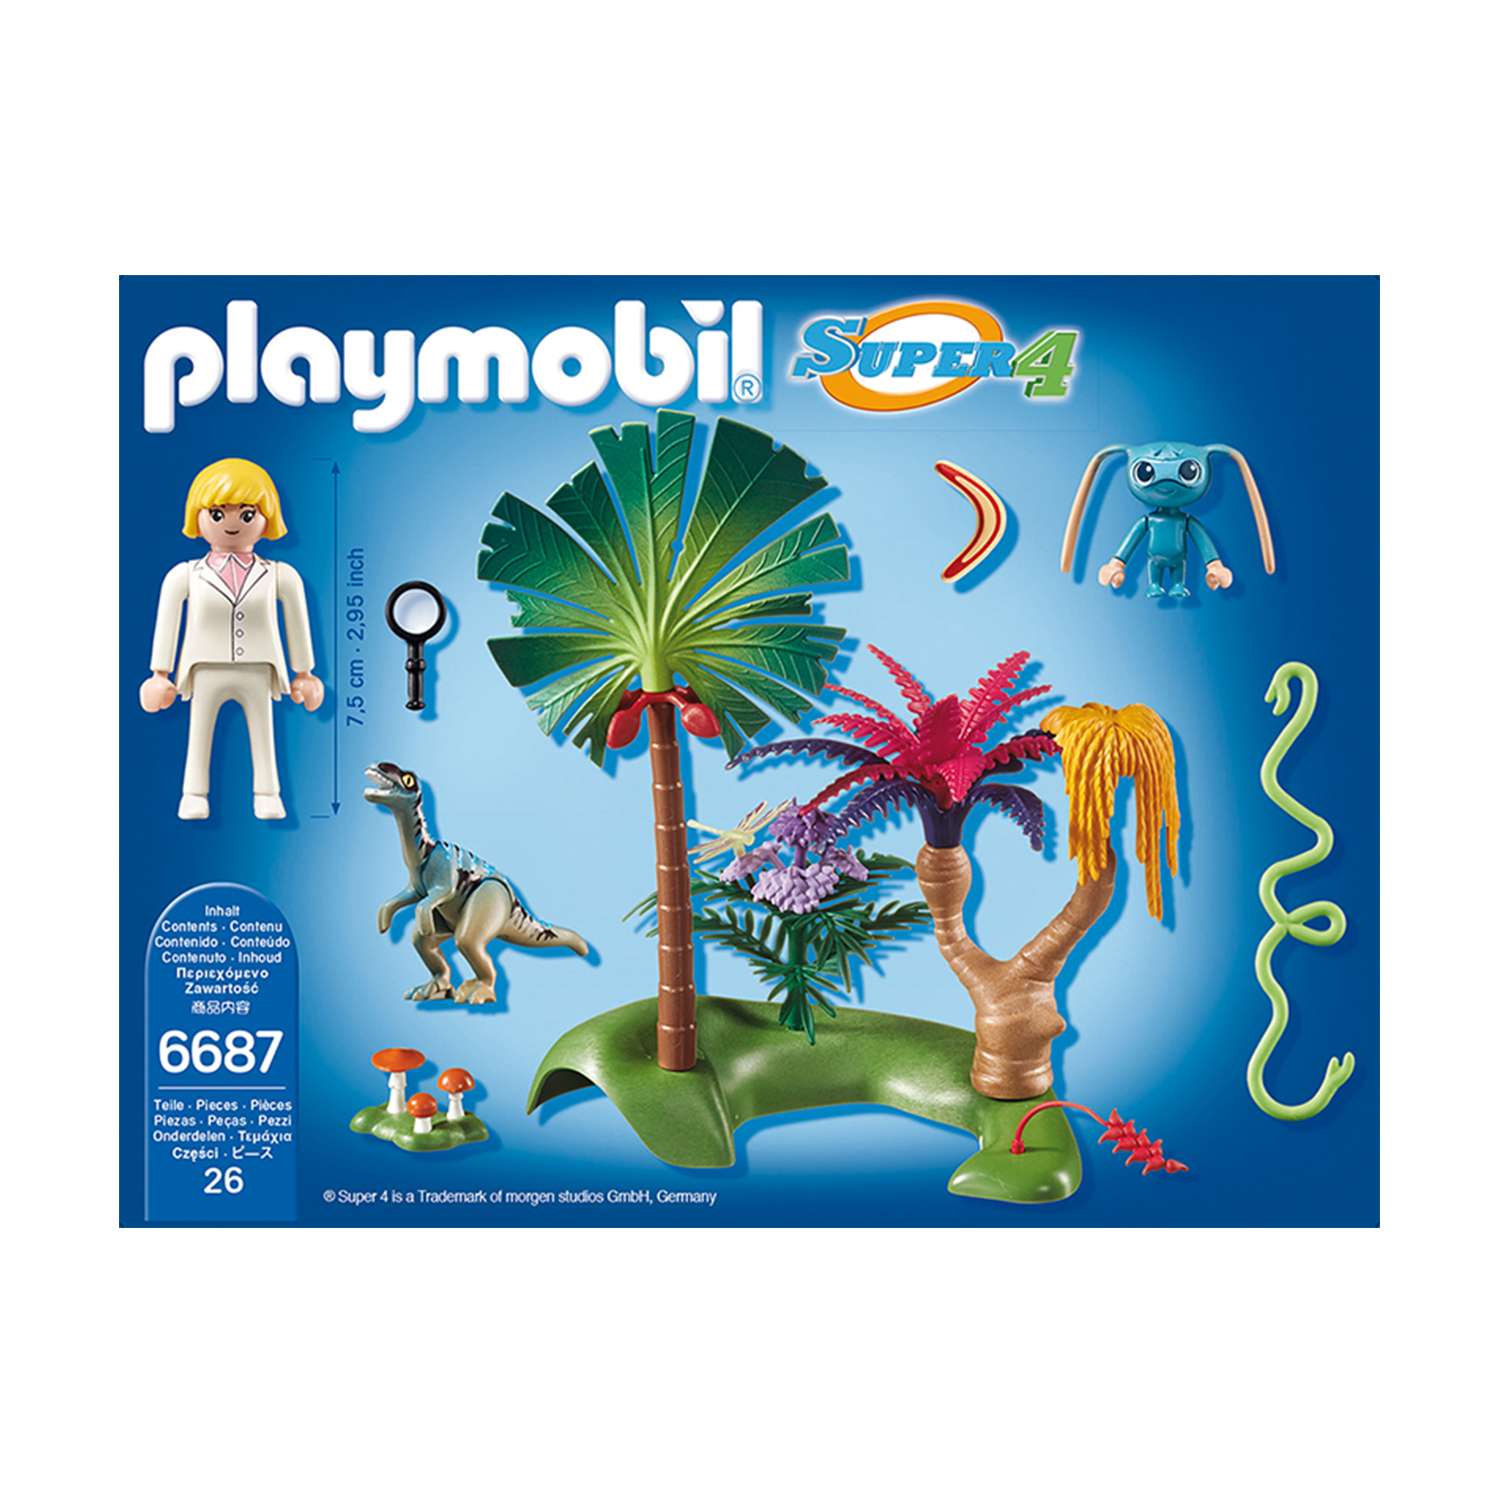 Конструктор Playmobil Супер4. Затерянный остров с Алиен и Хищником - фото 4